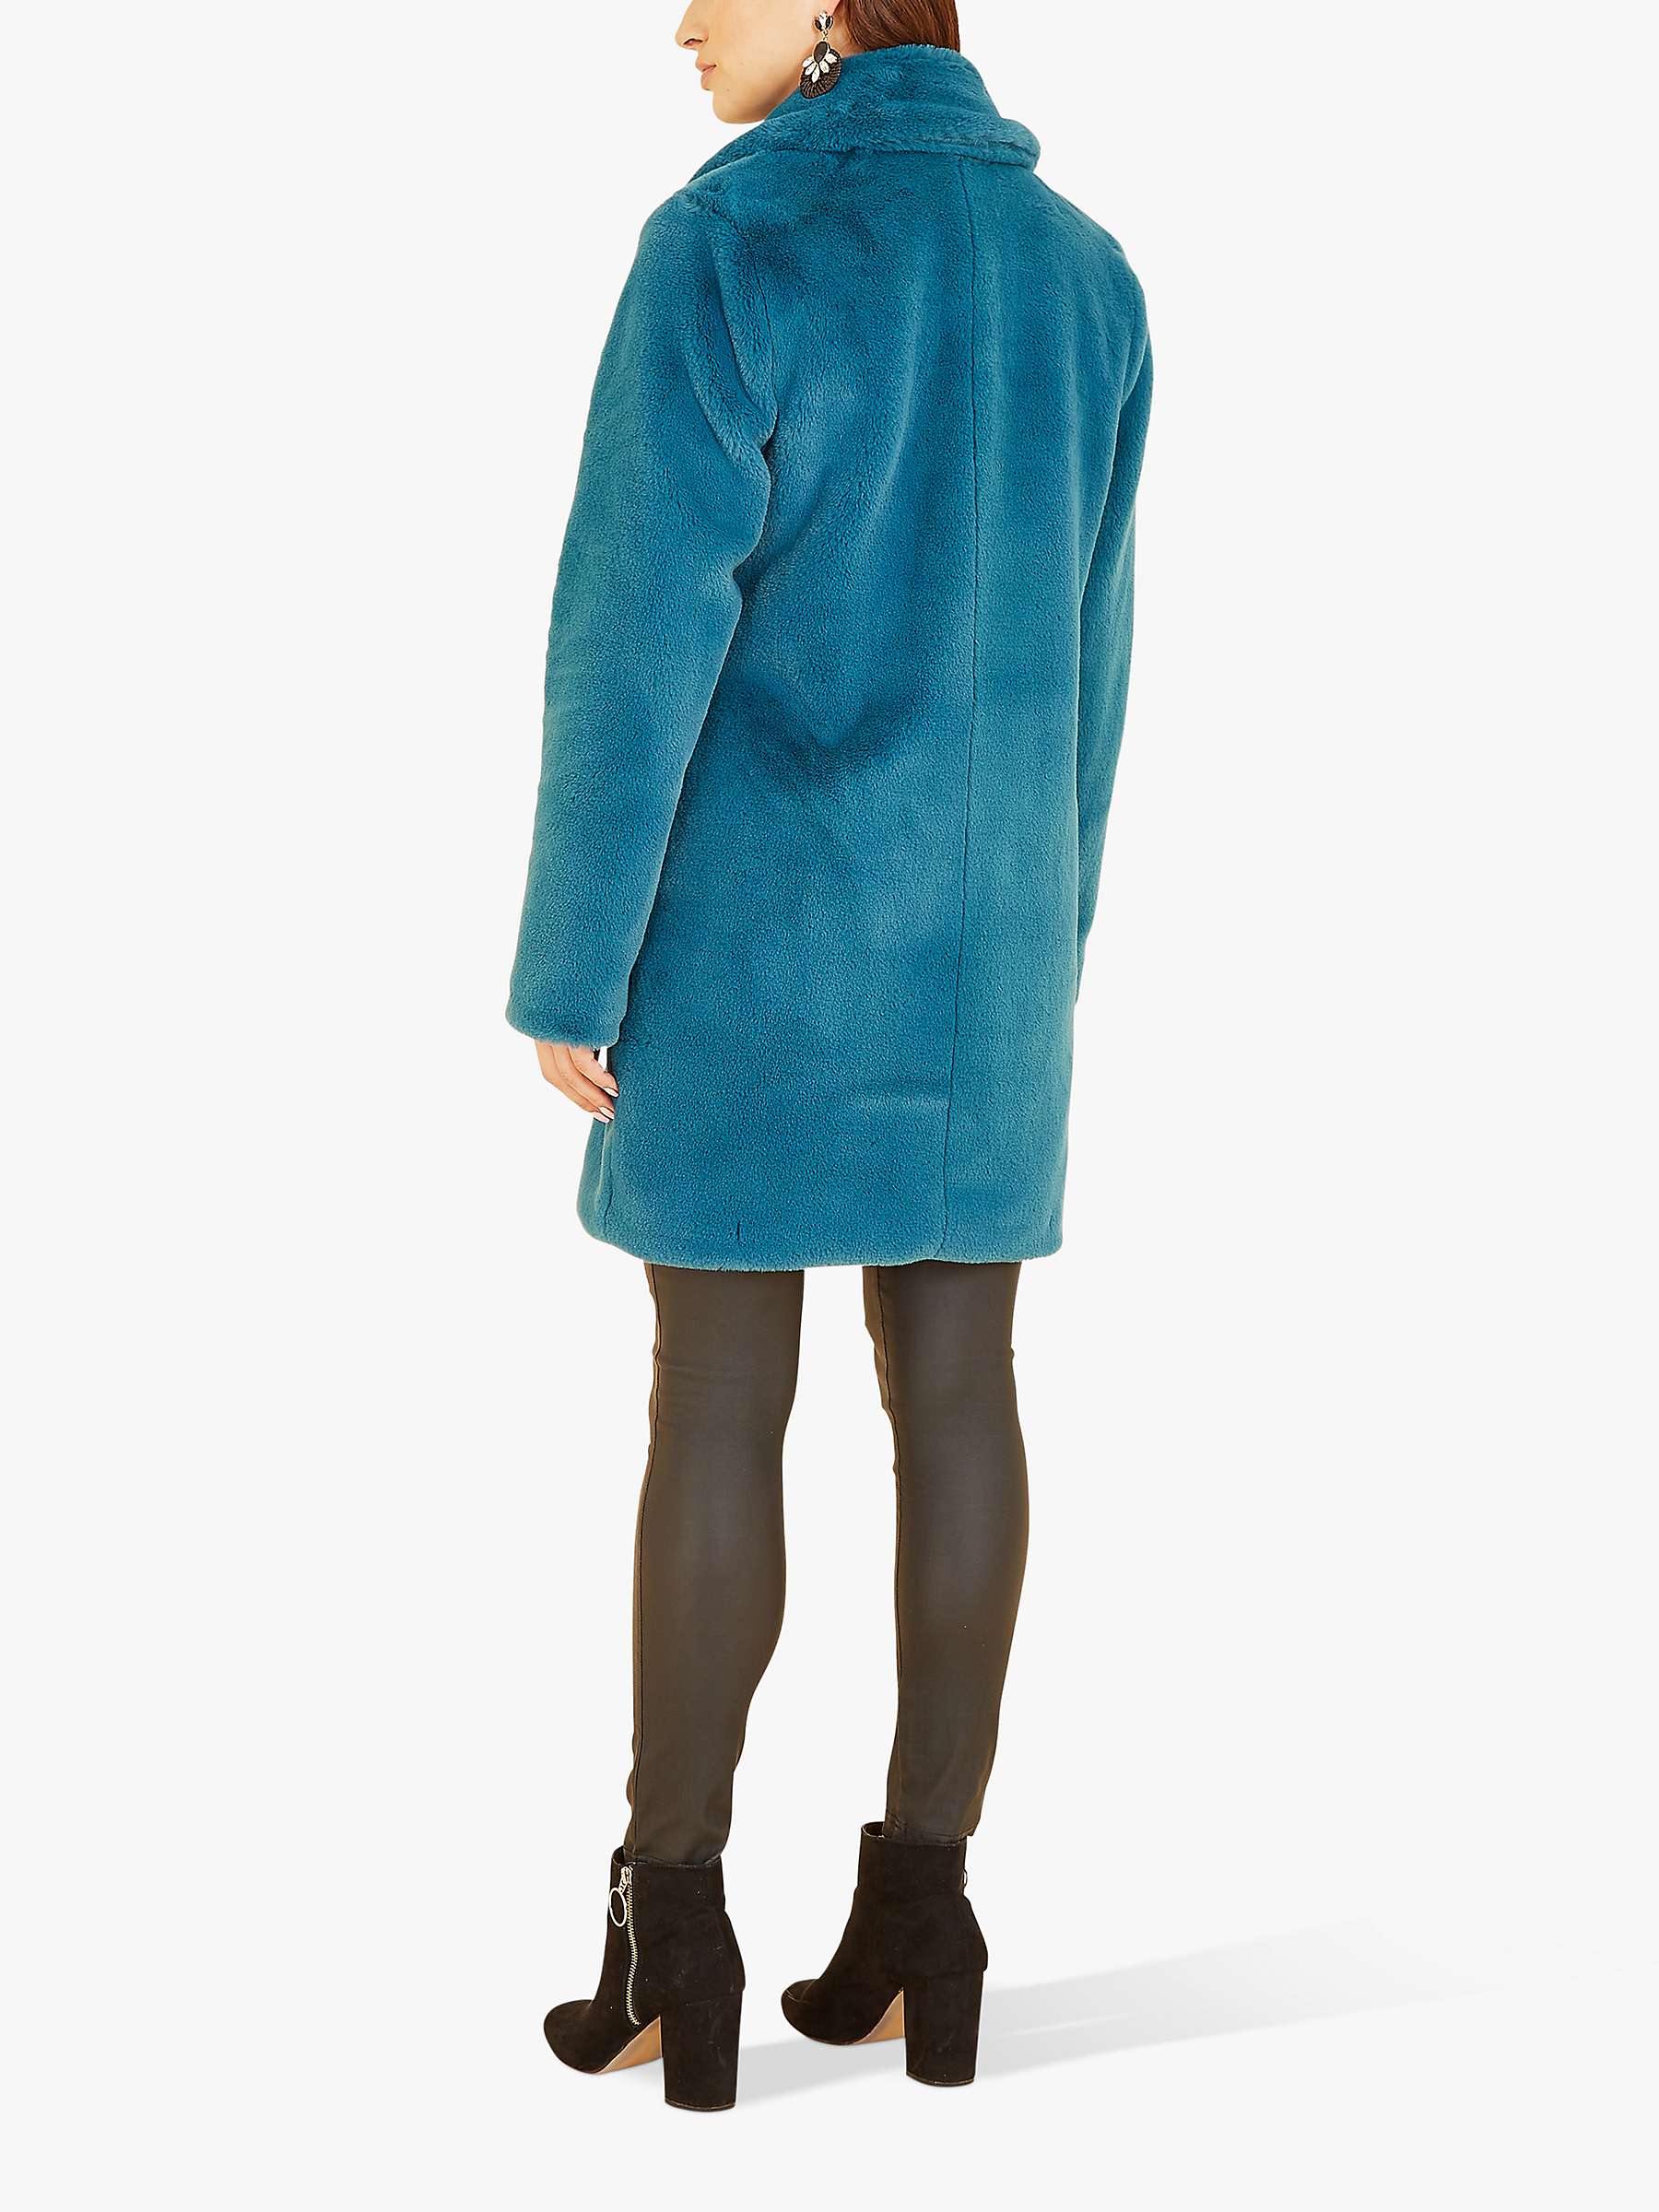 Buy Yumi Faux Fur Coat Online at johnlewis.com